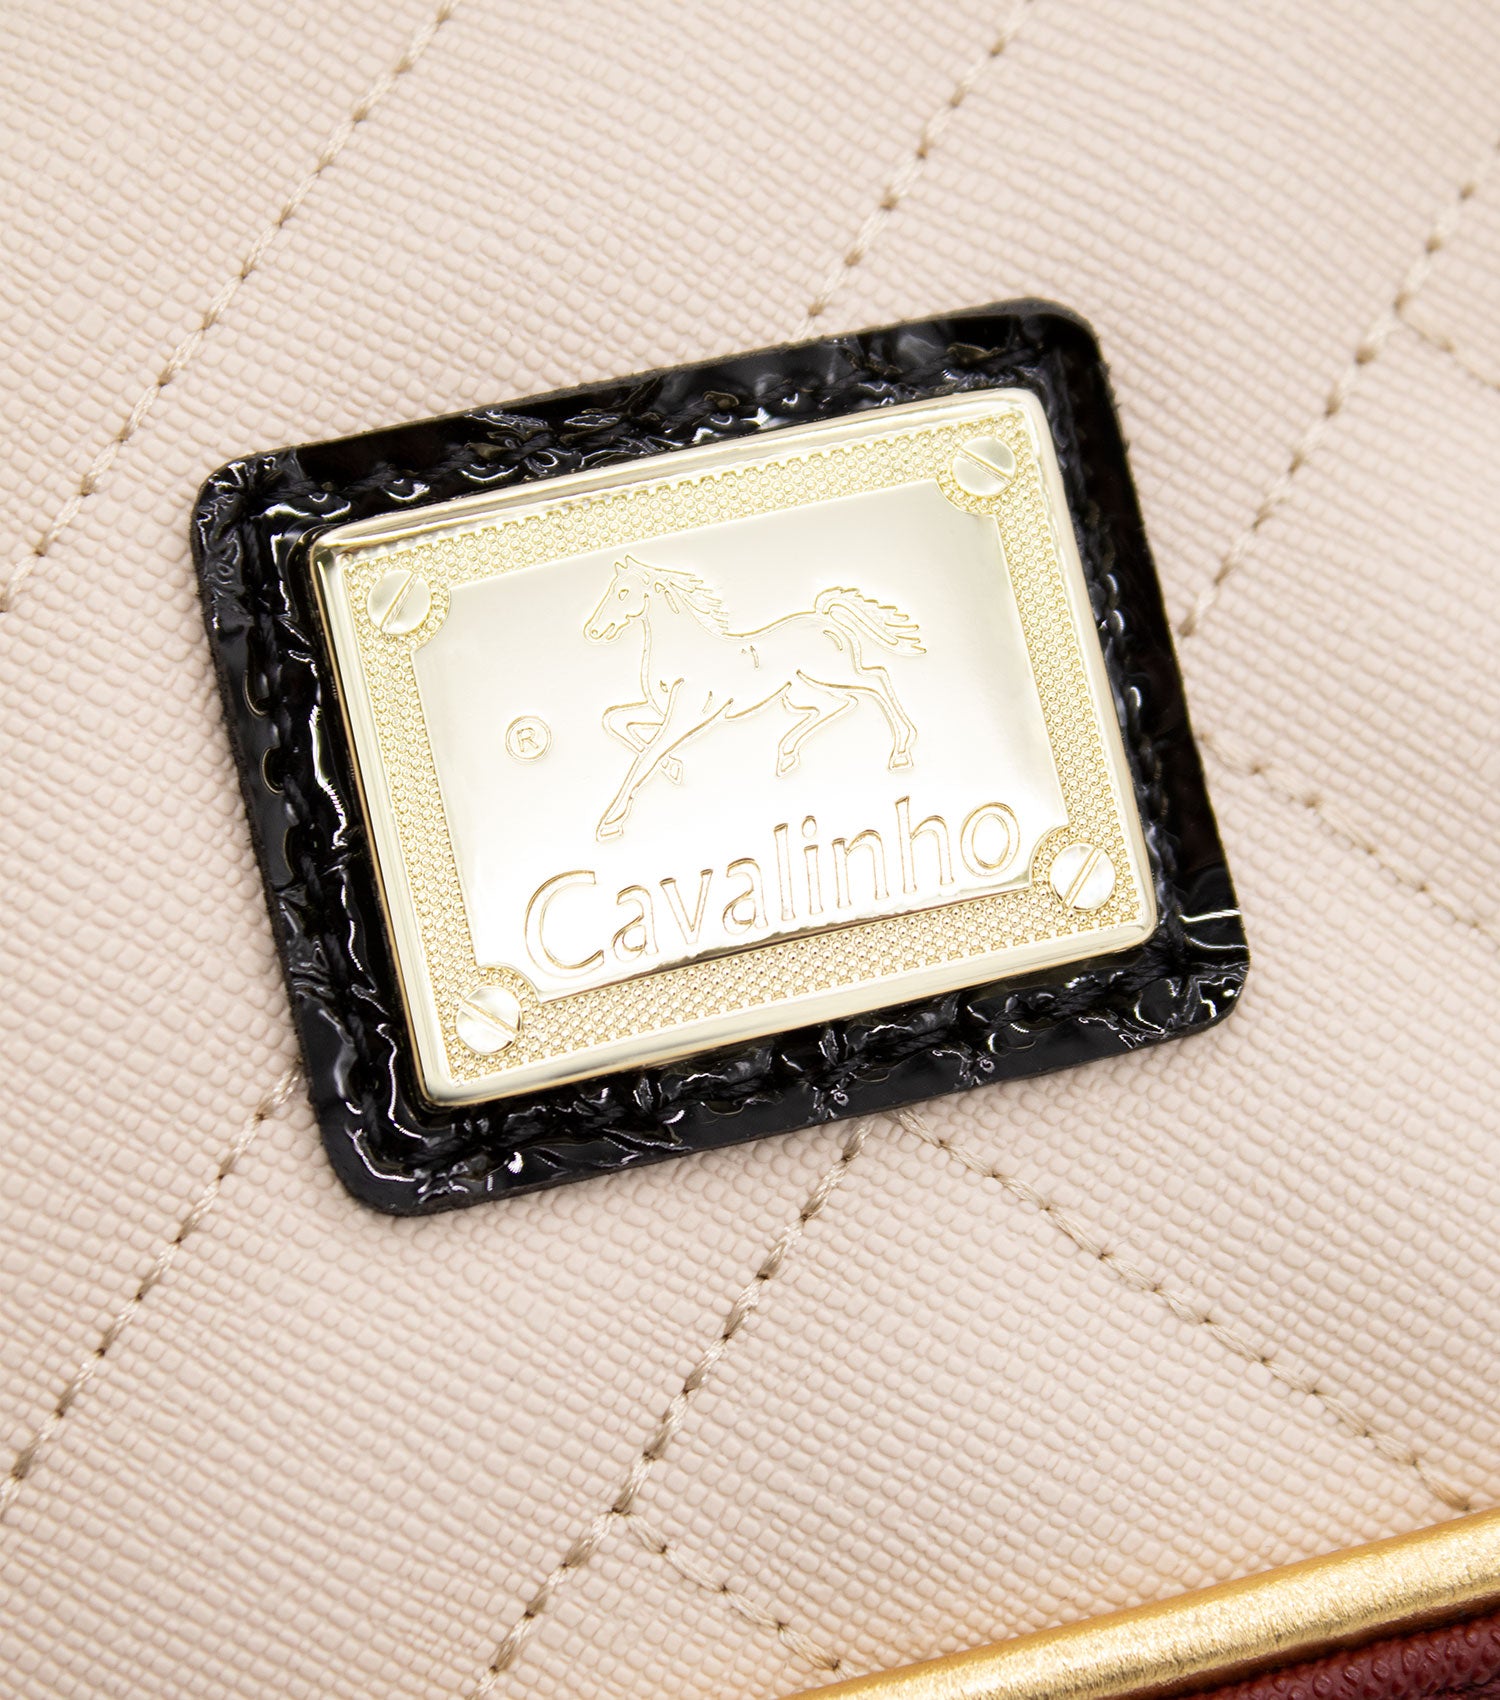 Cavalinho Ciao Bella Mini Handbag SKU 18060243.21 #color_Maroon Multi-Color